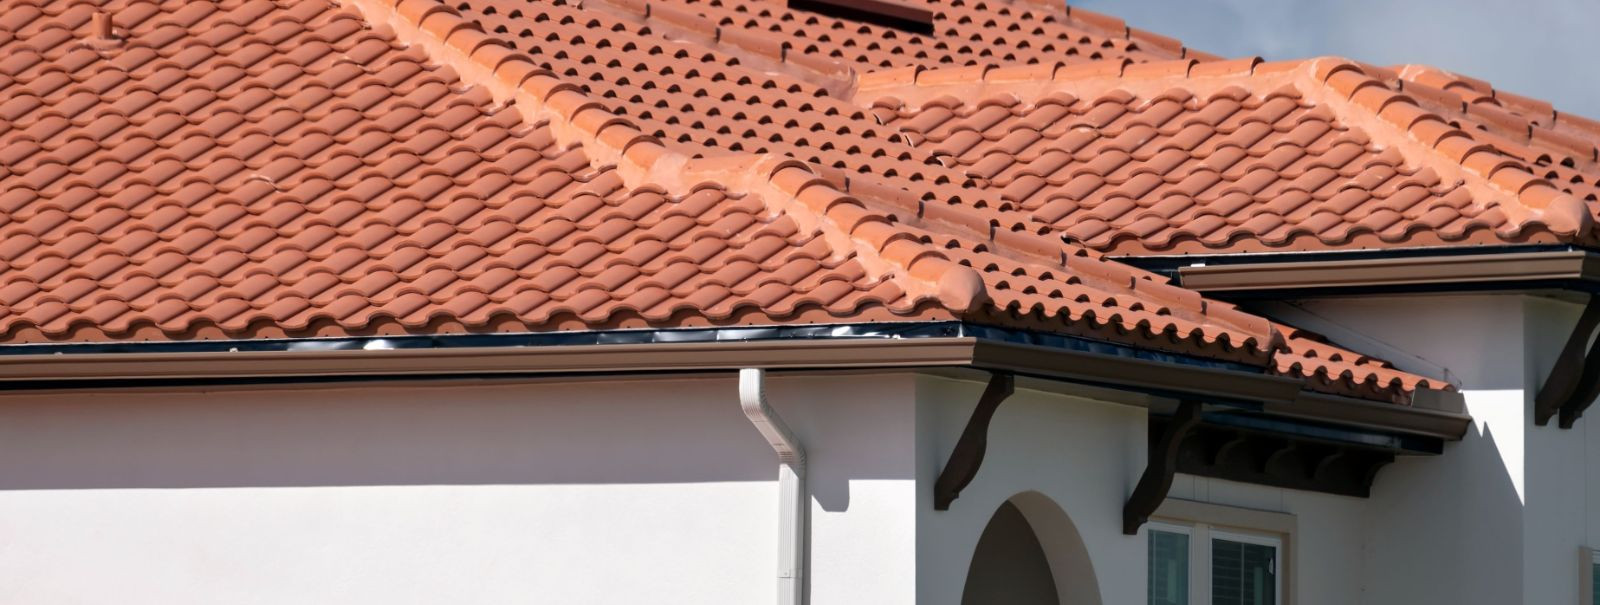 Õige katusematerjali valimine on oluline teie kodu ohutuse, vastupidavuse ja esteetika jaoks. Katus on teie esimene kaitsejoon elementide vastu ja mängib olulis